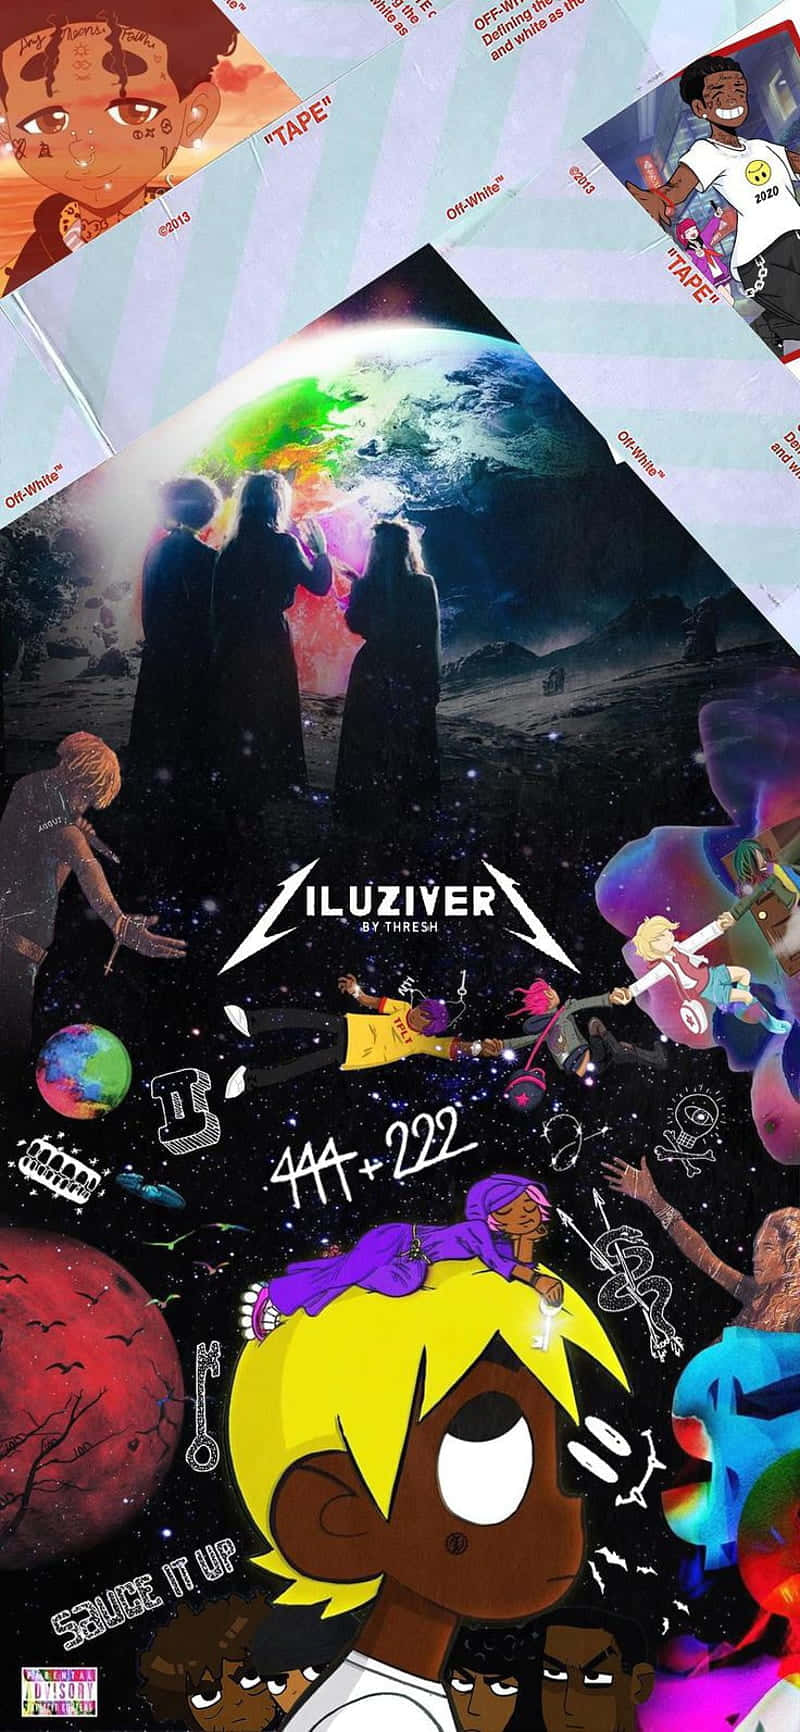 Uziworld: Das Albumcover Für 'lil Uzi Vert' Wallpaper